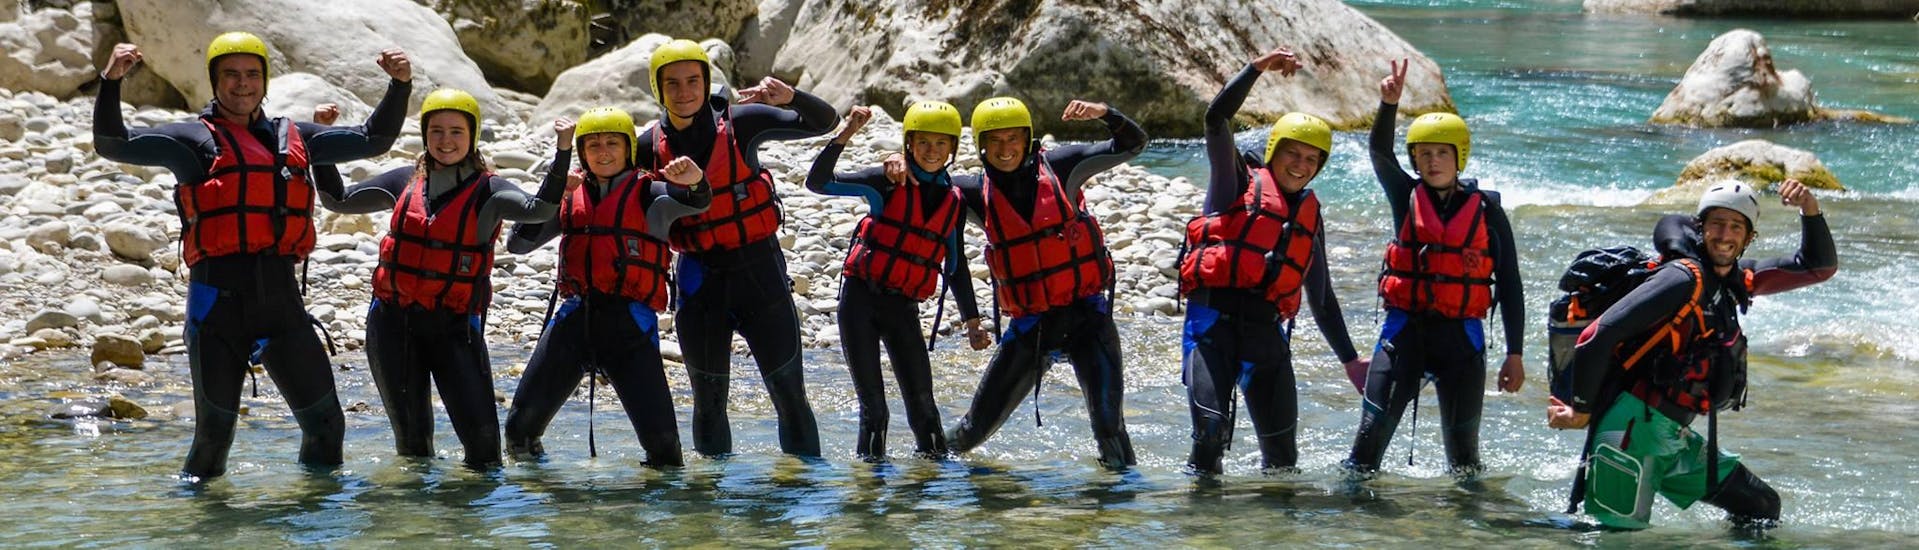 river-trekking-full-day-tusset-samson-raft-session-hero